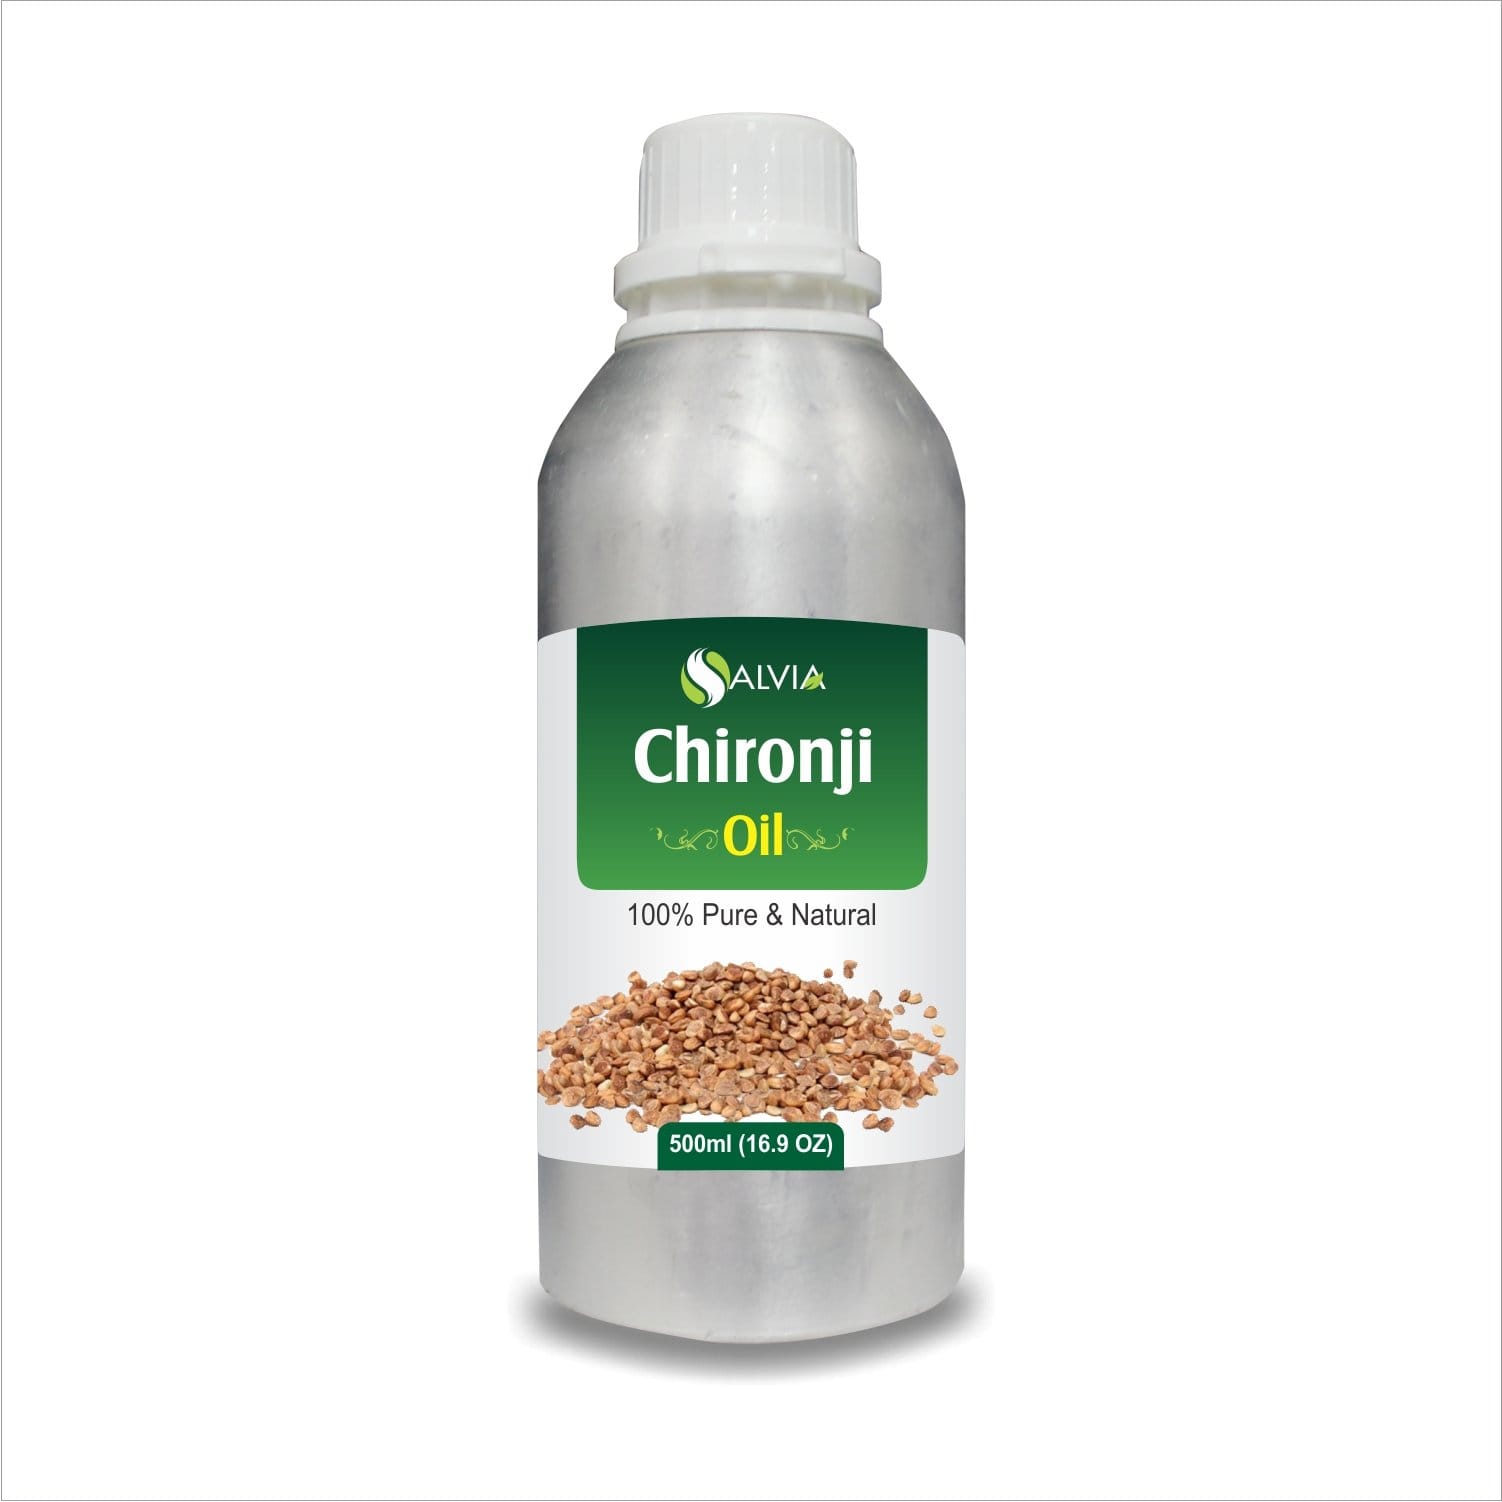 chironji benefits